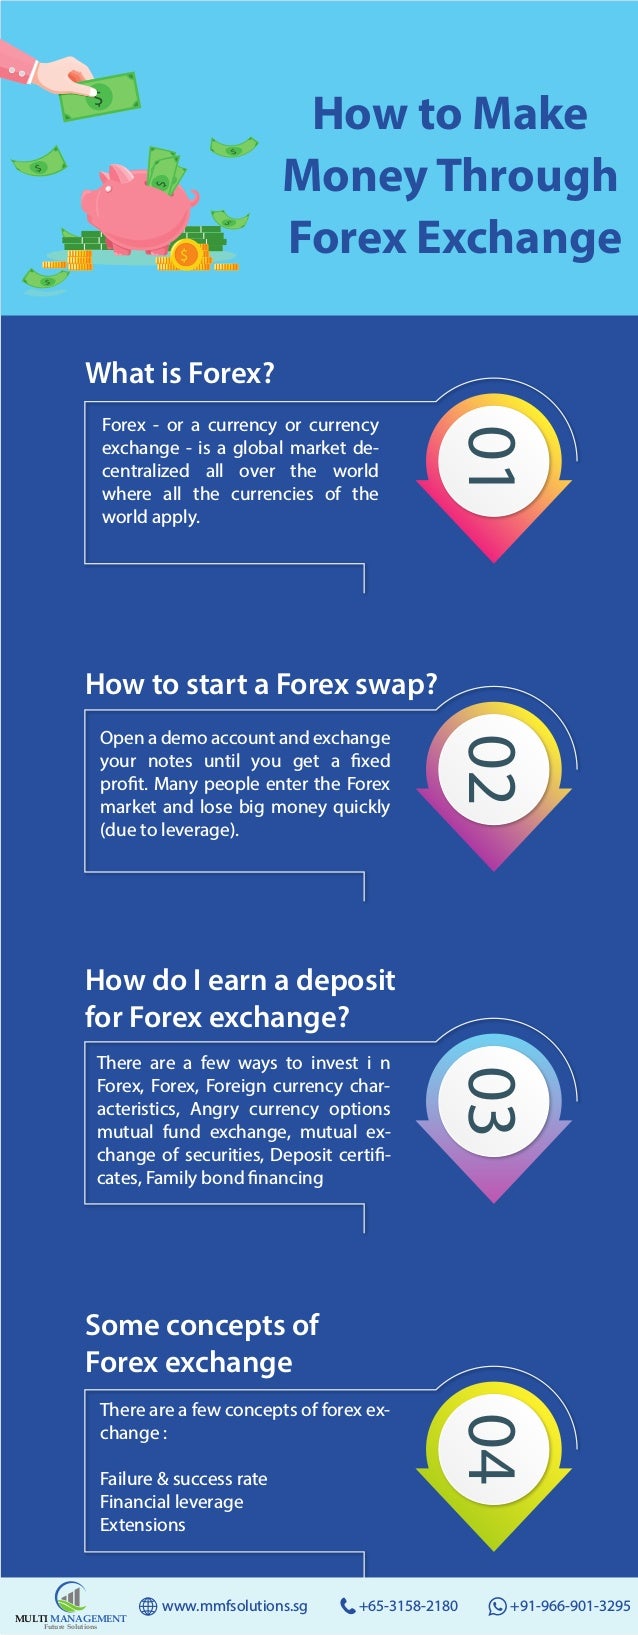 Forex Trading Tips Make Money Through Forex Exchange - 